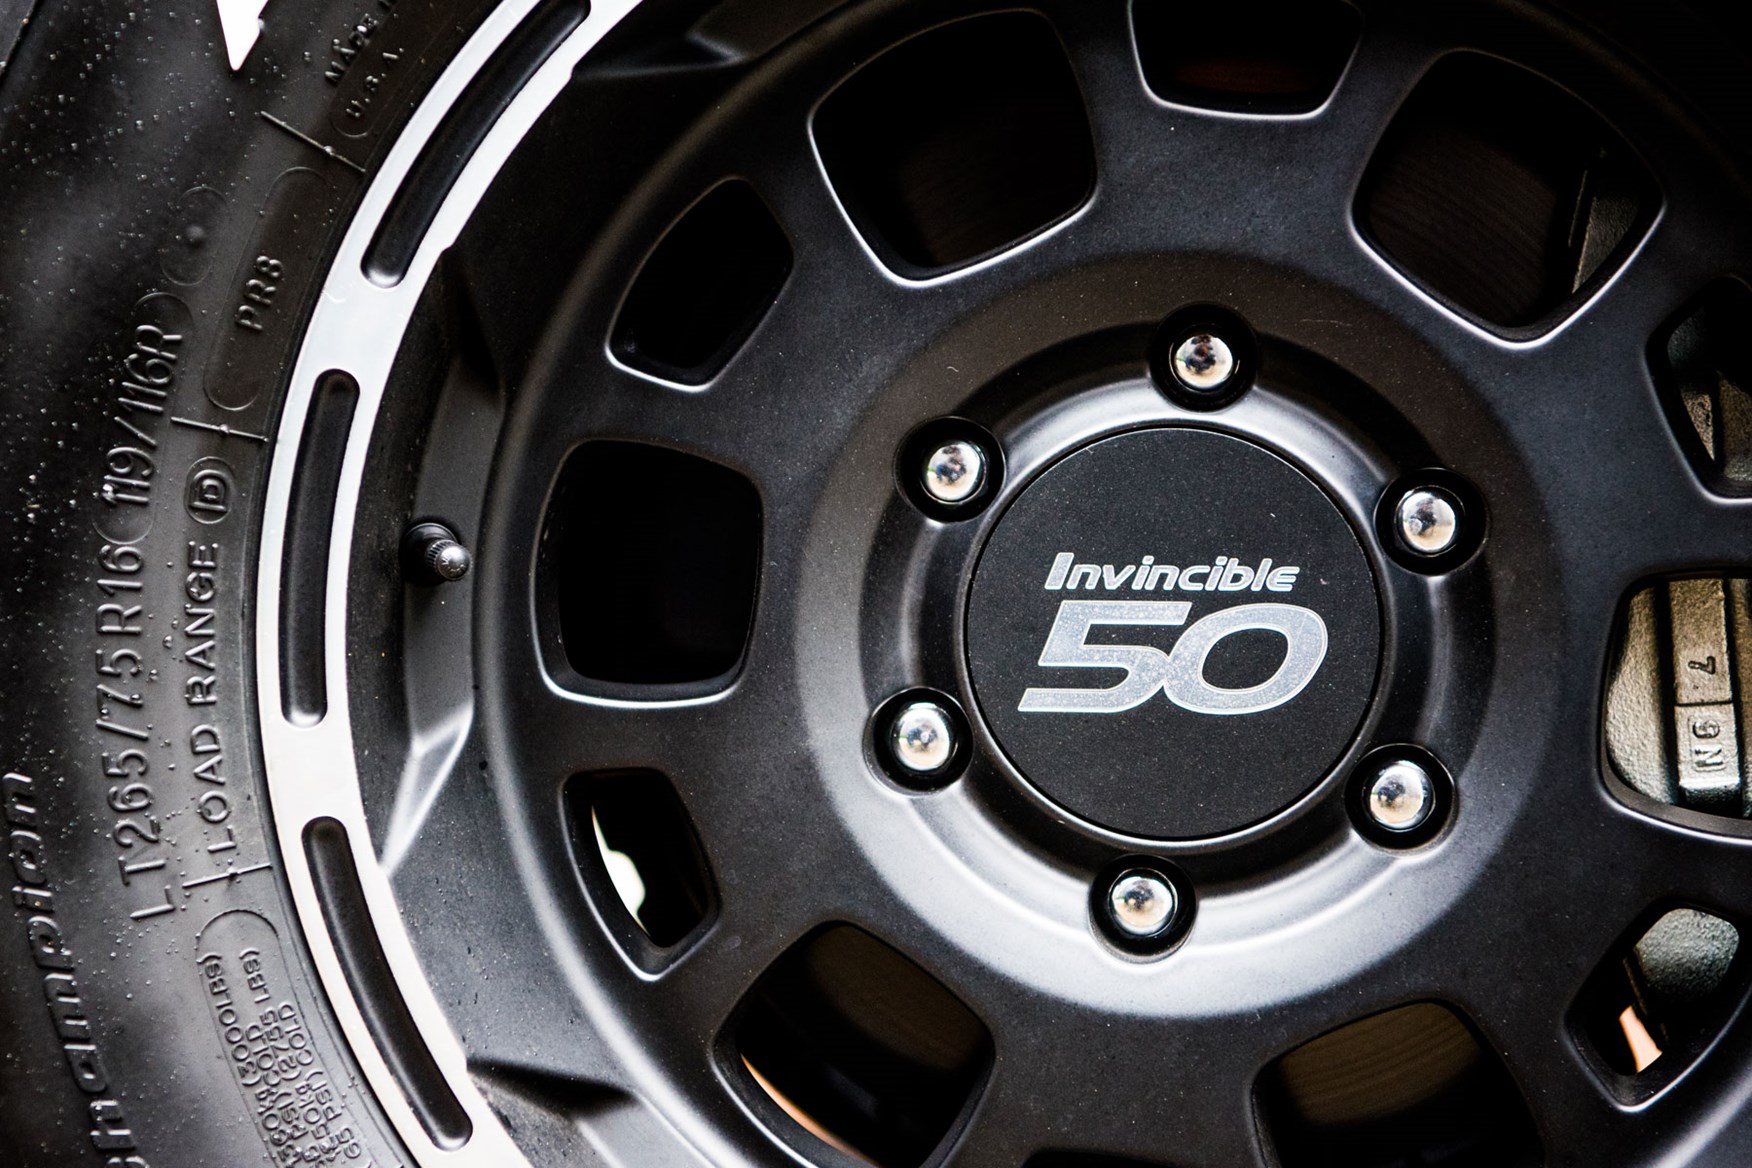 Toyota Hilux Invincible 50 review - wheel detail showing Invincible 50 centre cap